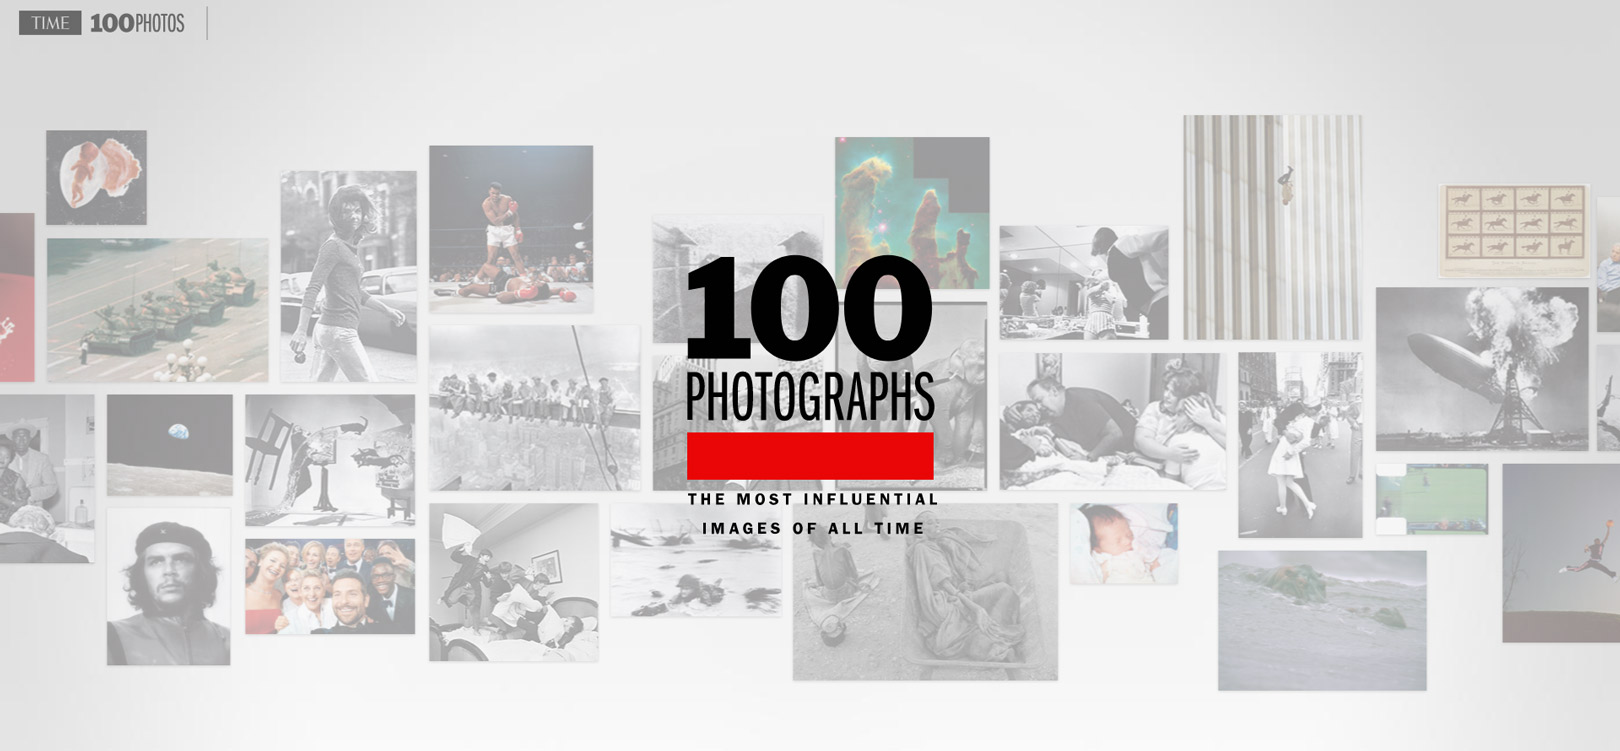 100 foto simbolo secondo il Time 